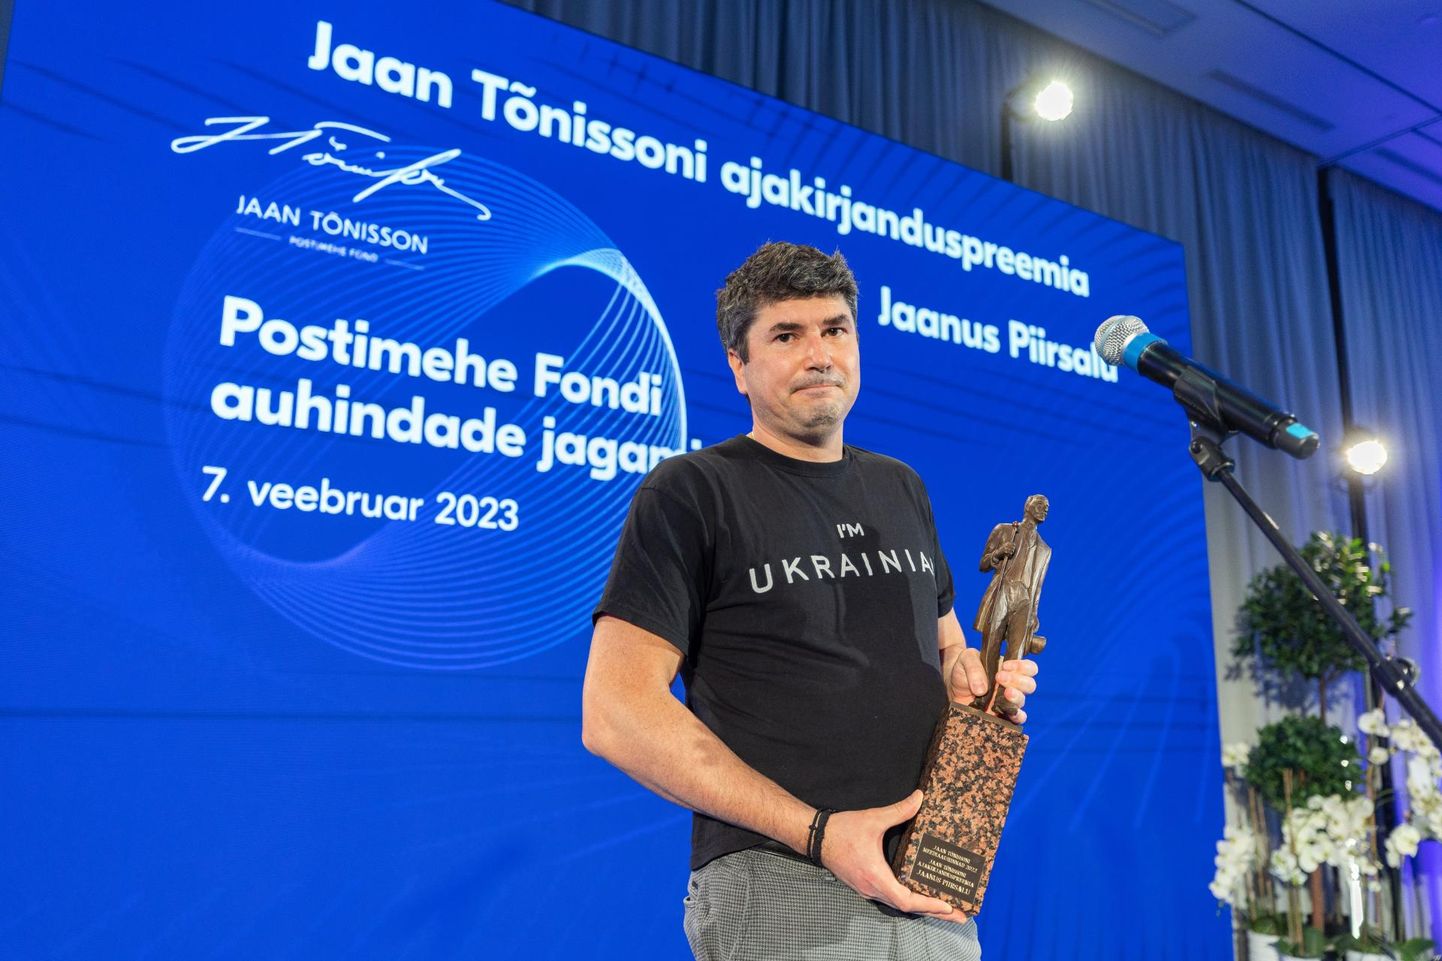 Журналист Яанус Пийрсалу на вручении наград фонда Postimees. Снимок иллюстративный.